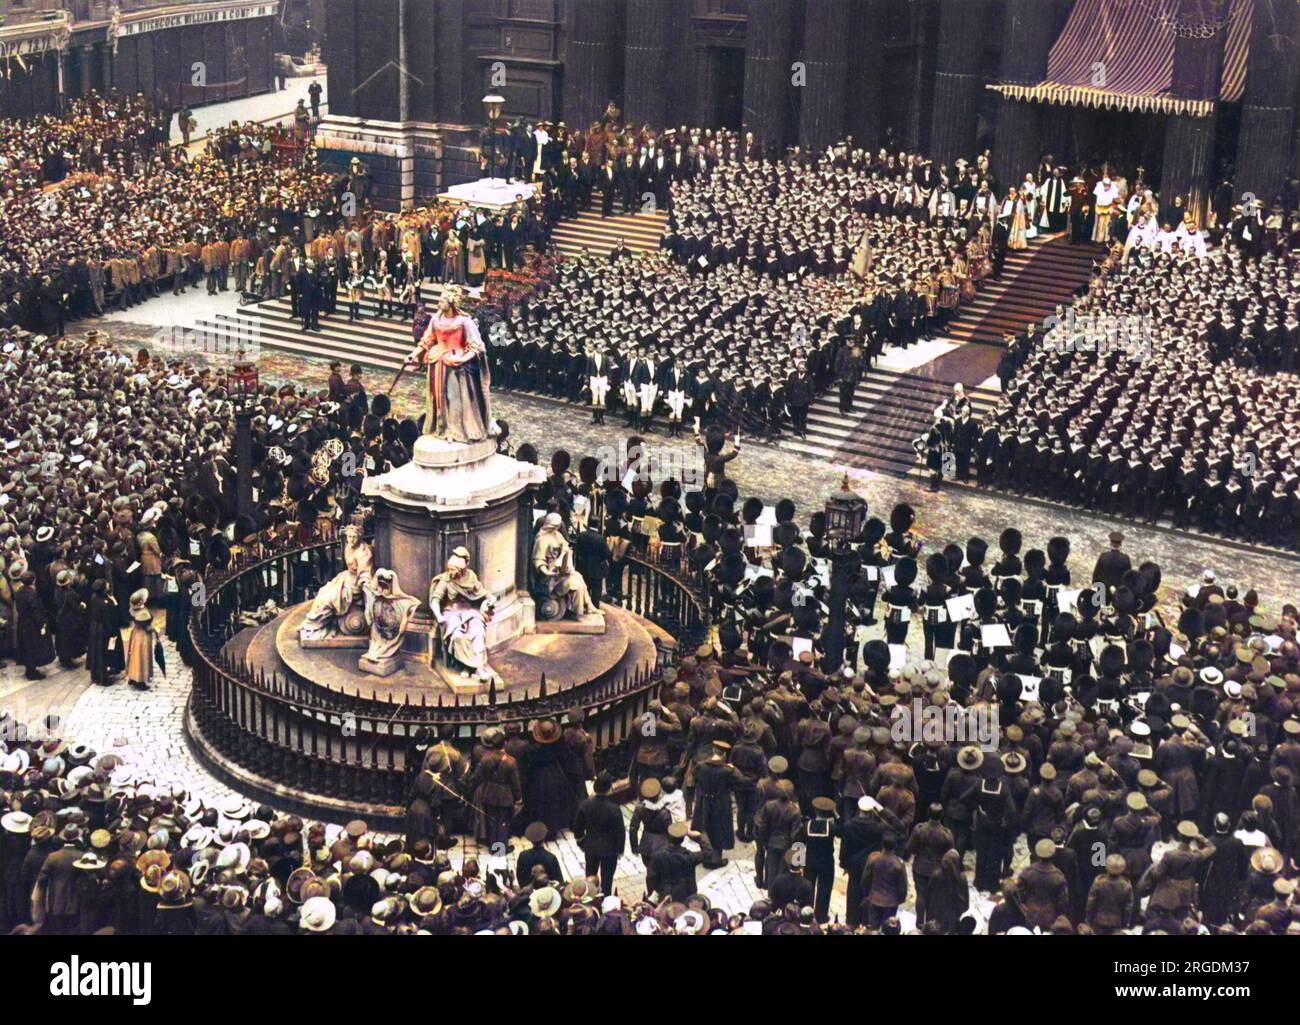 Un service d'action de grâce en plein air à la cathédrale St Paul de Londres, à la fin de la première Guerre mondiale. Les foules se regroupent autour de la statue de la reine Victoria. Banque D'Images